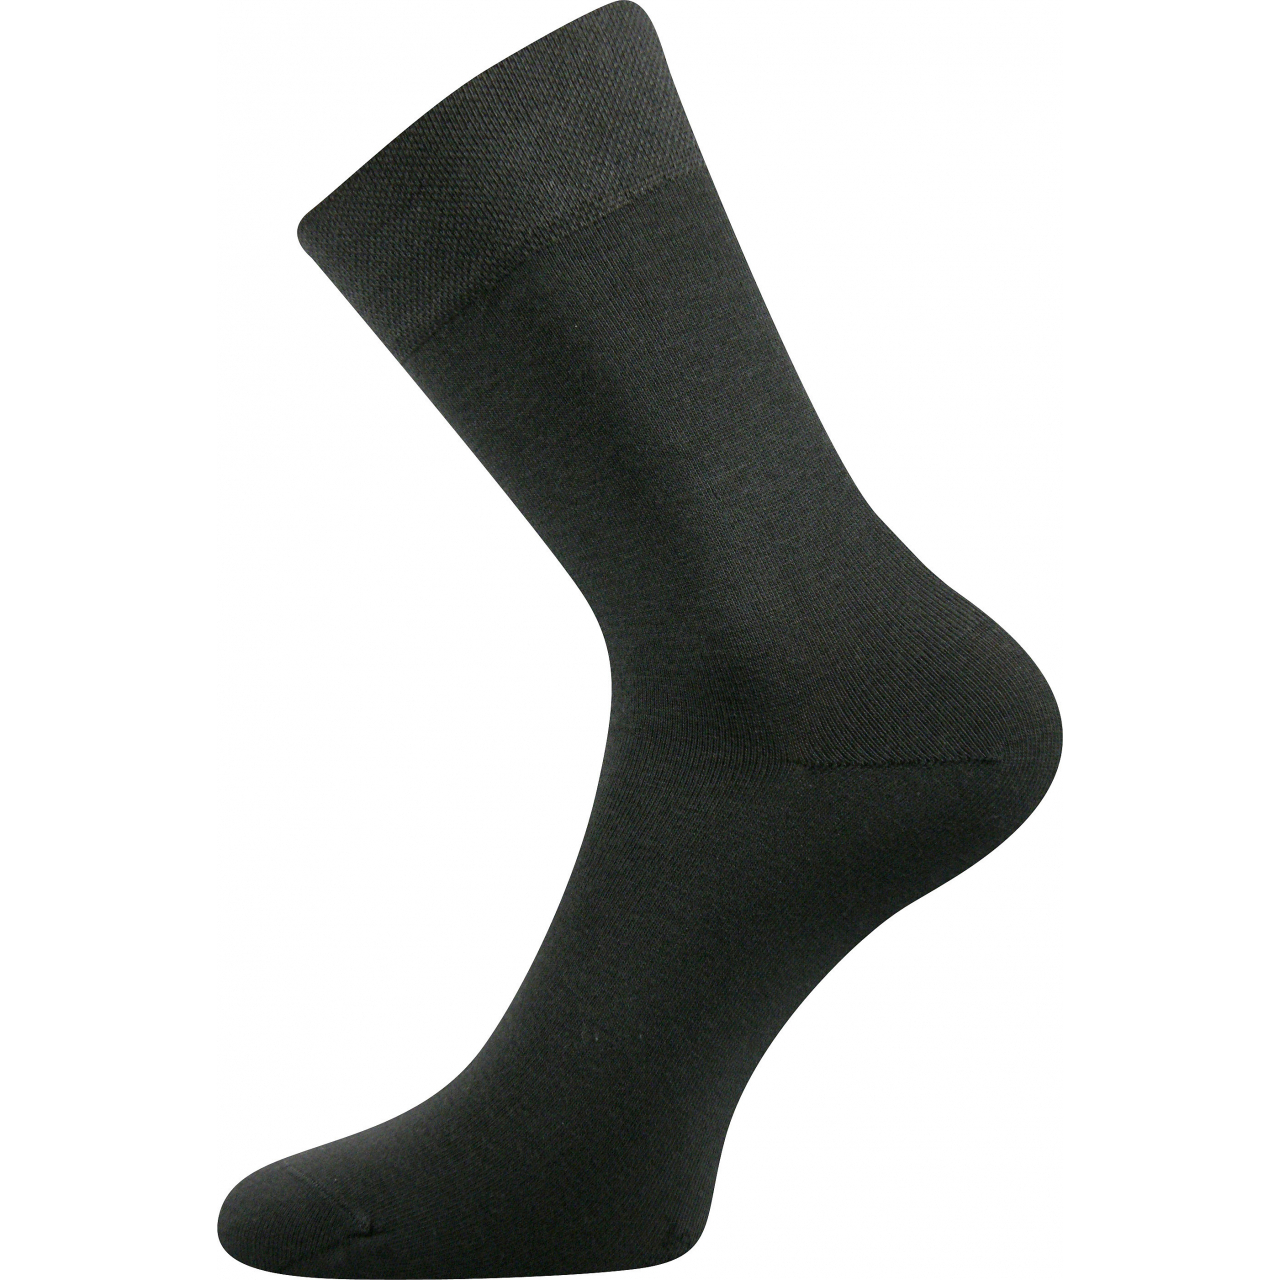 Ponožky společenské Lonka Dypak - tmavě šedé, 43-46